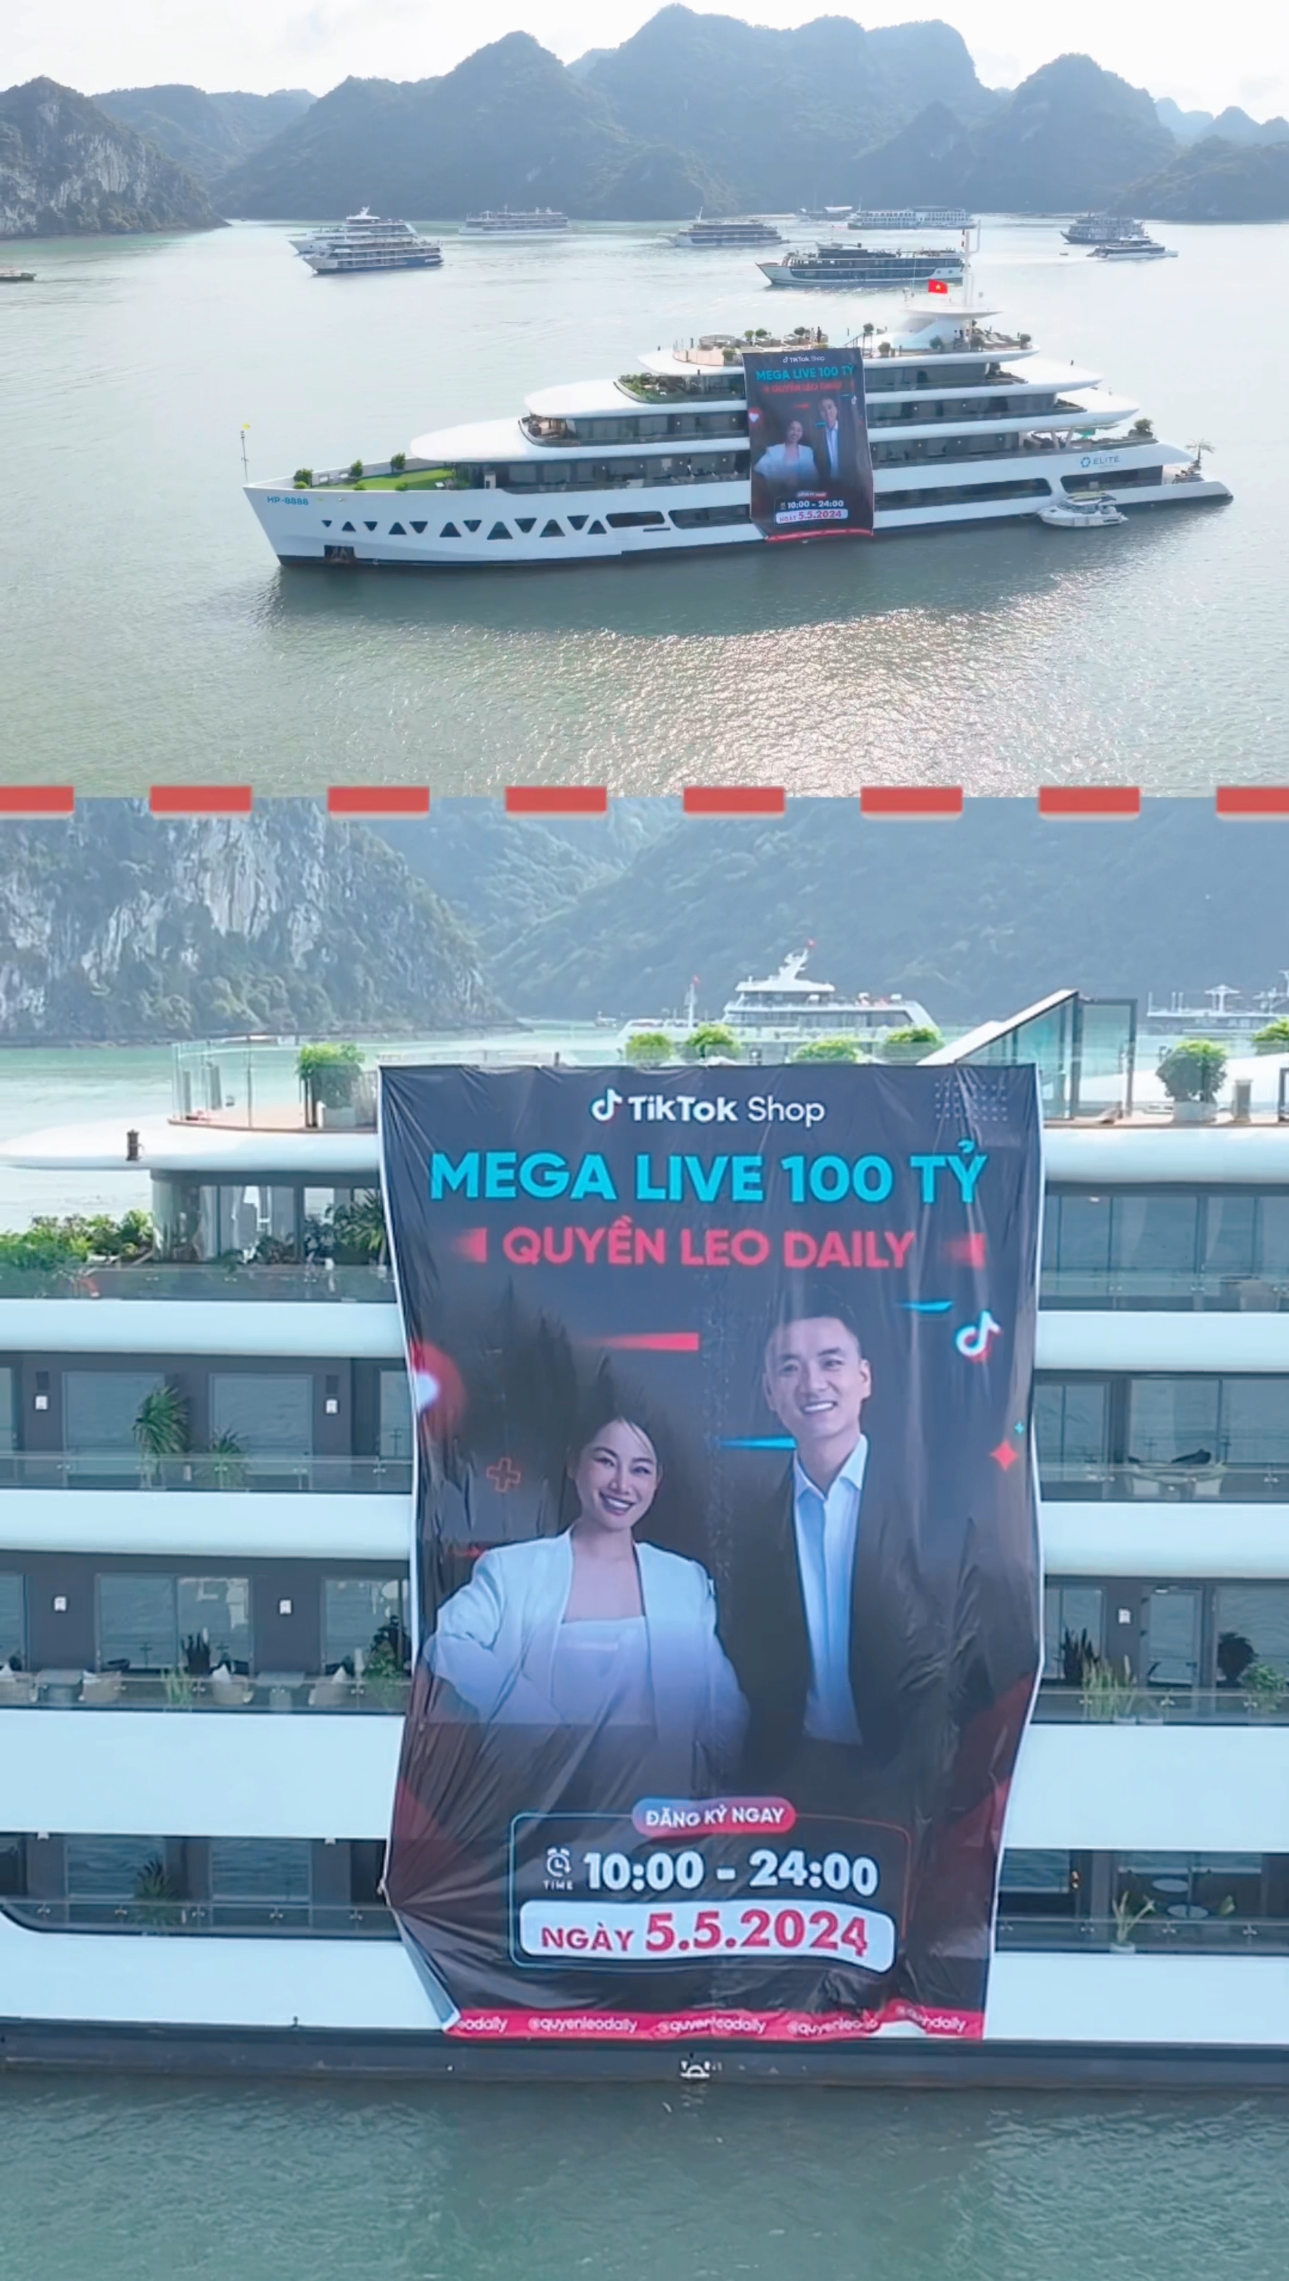 Chủ 1 kênh TikTok công bố phiên livestream phá vỡ kỷ lục Đông Nam Á: Nhận tài trợ 1 triệu đô, doanh thu kỳ vọng đạt 100 tỷ đồng, thuê hẳn du thuyền 5 sao để làm chiến dịch- Ảnh 1.